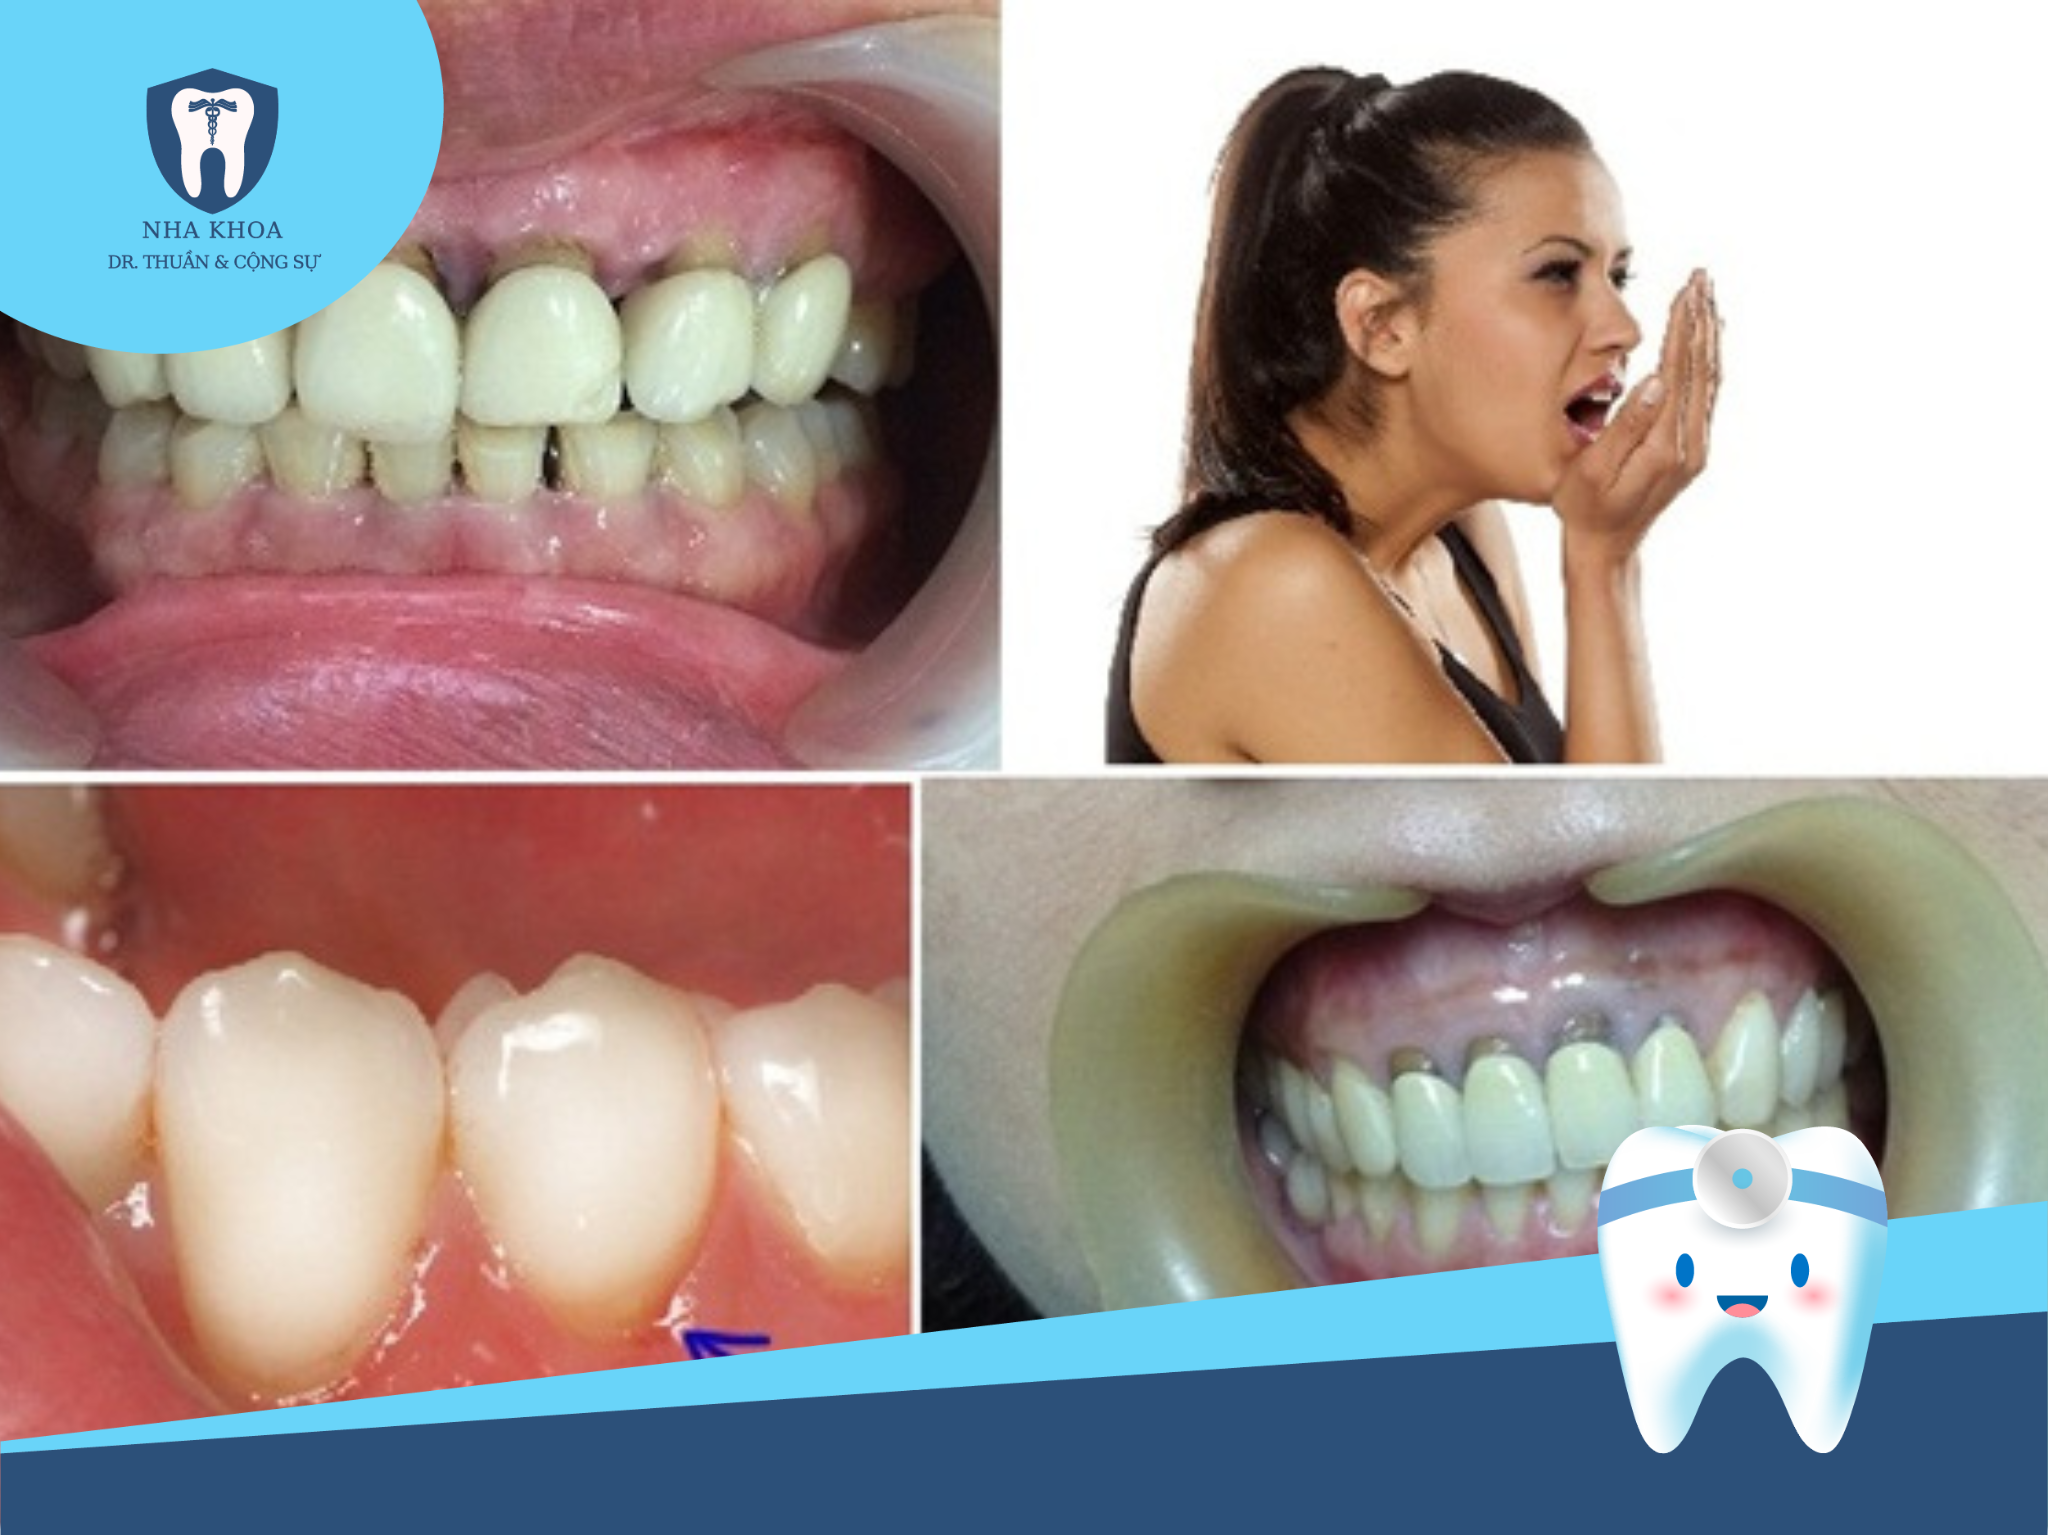 Khi thực hiện bọc răng sứ mà không đảm bảo về chất liệu và kỹ thuật, sau một thời gian dài, men răng dưới lớp vỏ sẽ bị bào mòn, gây ra tình trạng răng sứ lung lay và dễ rơi ra.